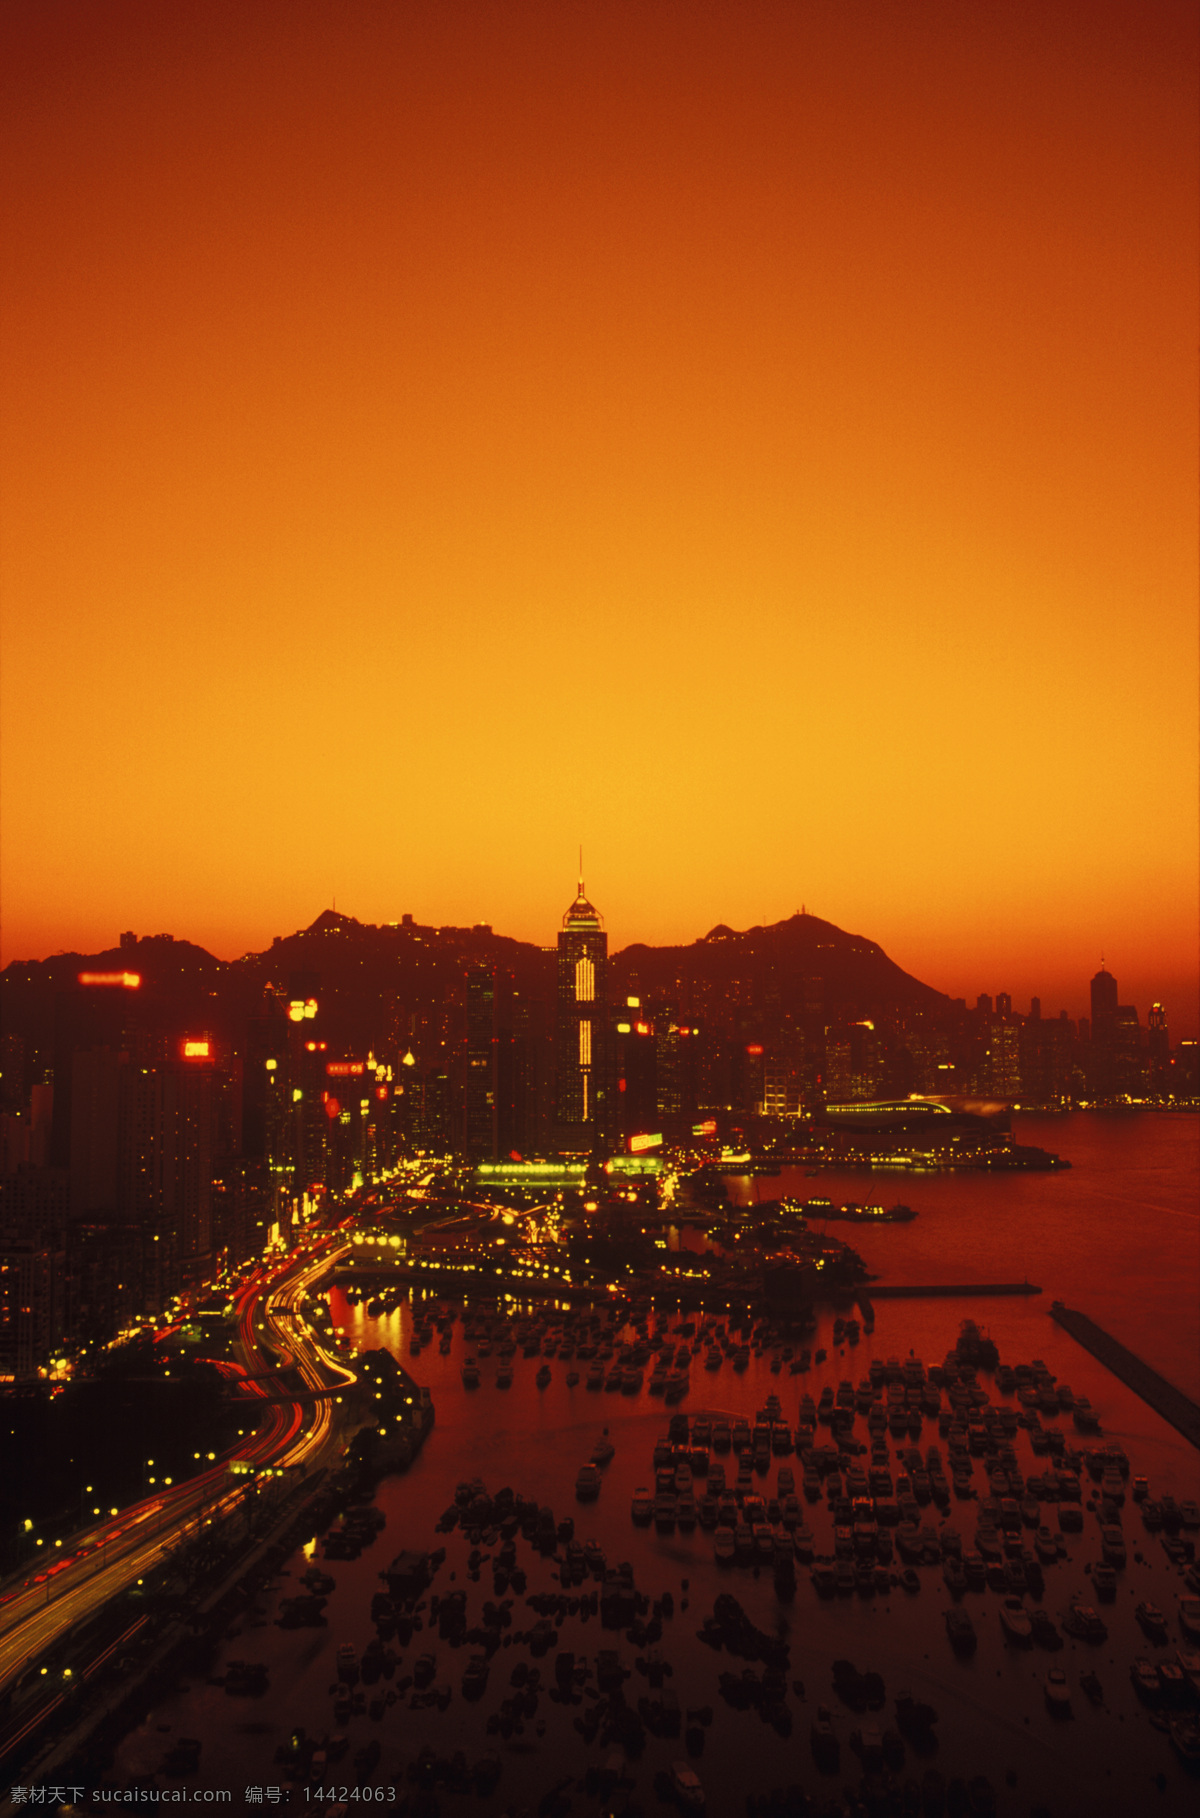 黄昏 傍晚 时 香港 风光 城市风光 高楼大厦 建筑 风景 繁华 霓虹灯 晚霞 大海 海面 灯光 船只 摄影图 高清图片 环境家居